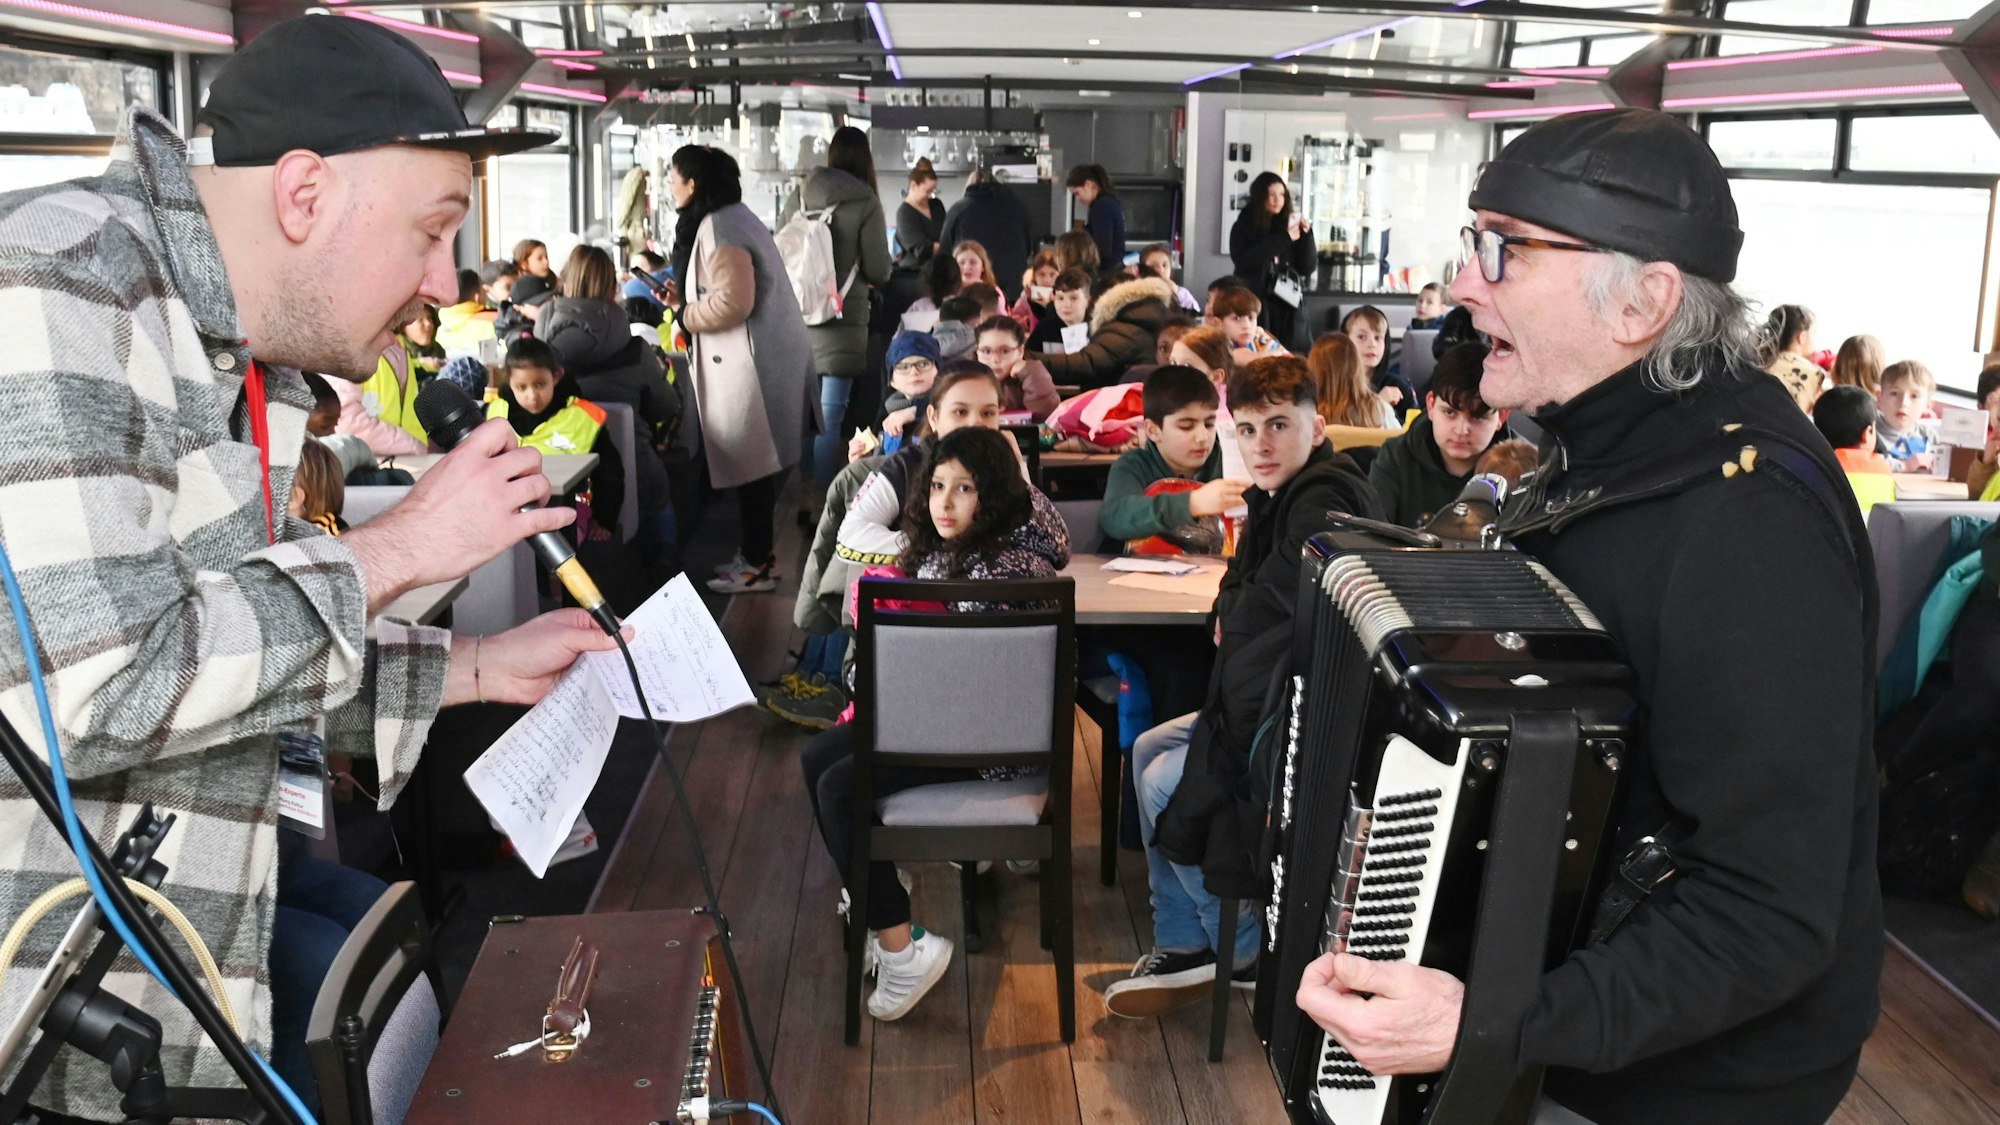 Ein Mann mit Mikrofon in der Hand und ein Mann mit Akkordeon stehen sich gegenüber. Im Hintergrund sind Kinder zu sehen, die an Tischen sitzen.